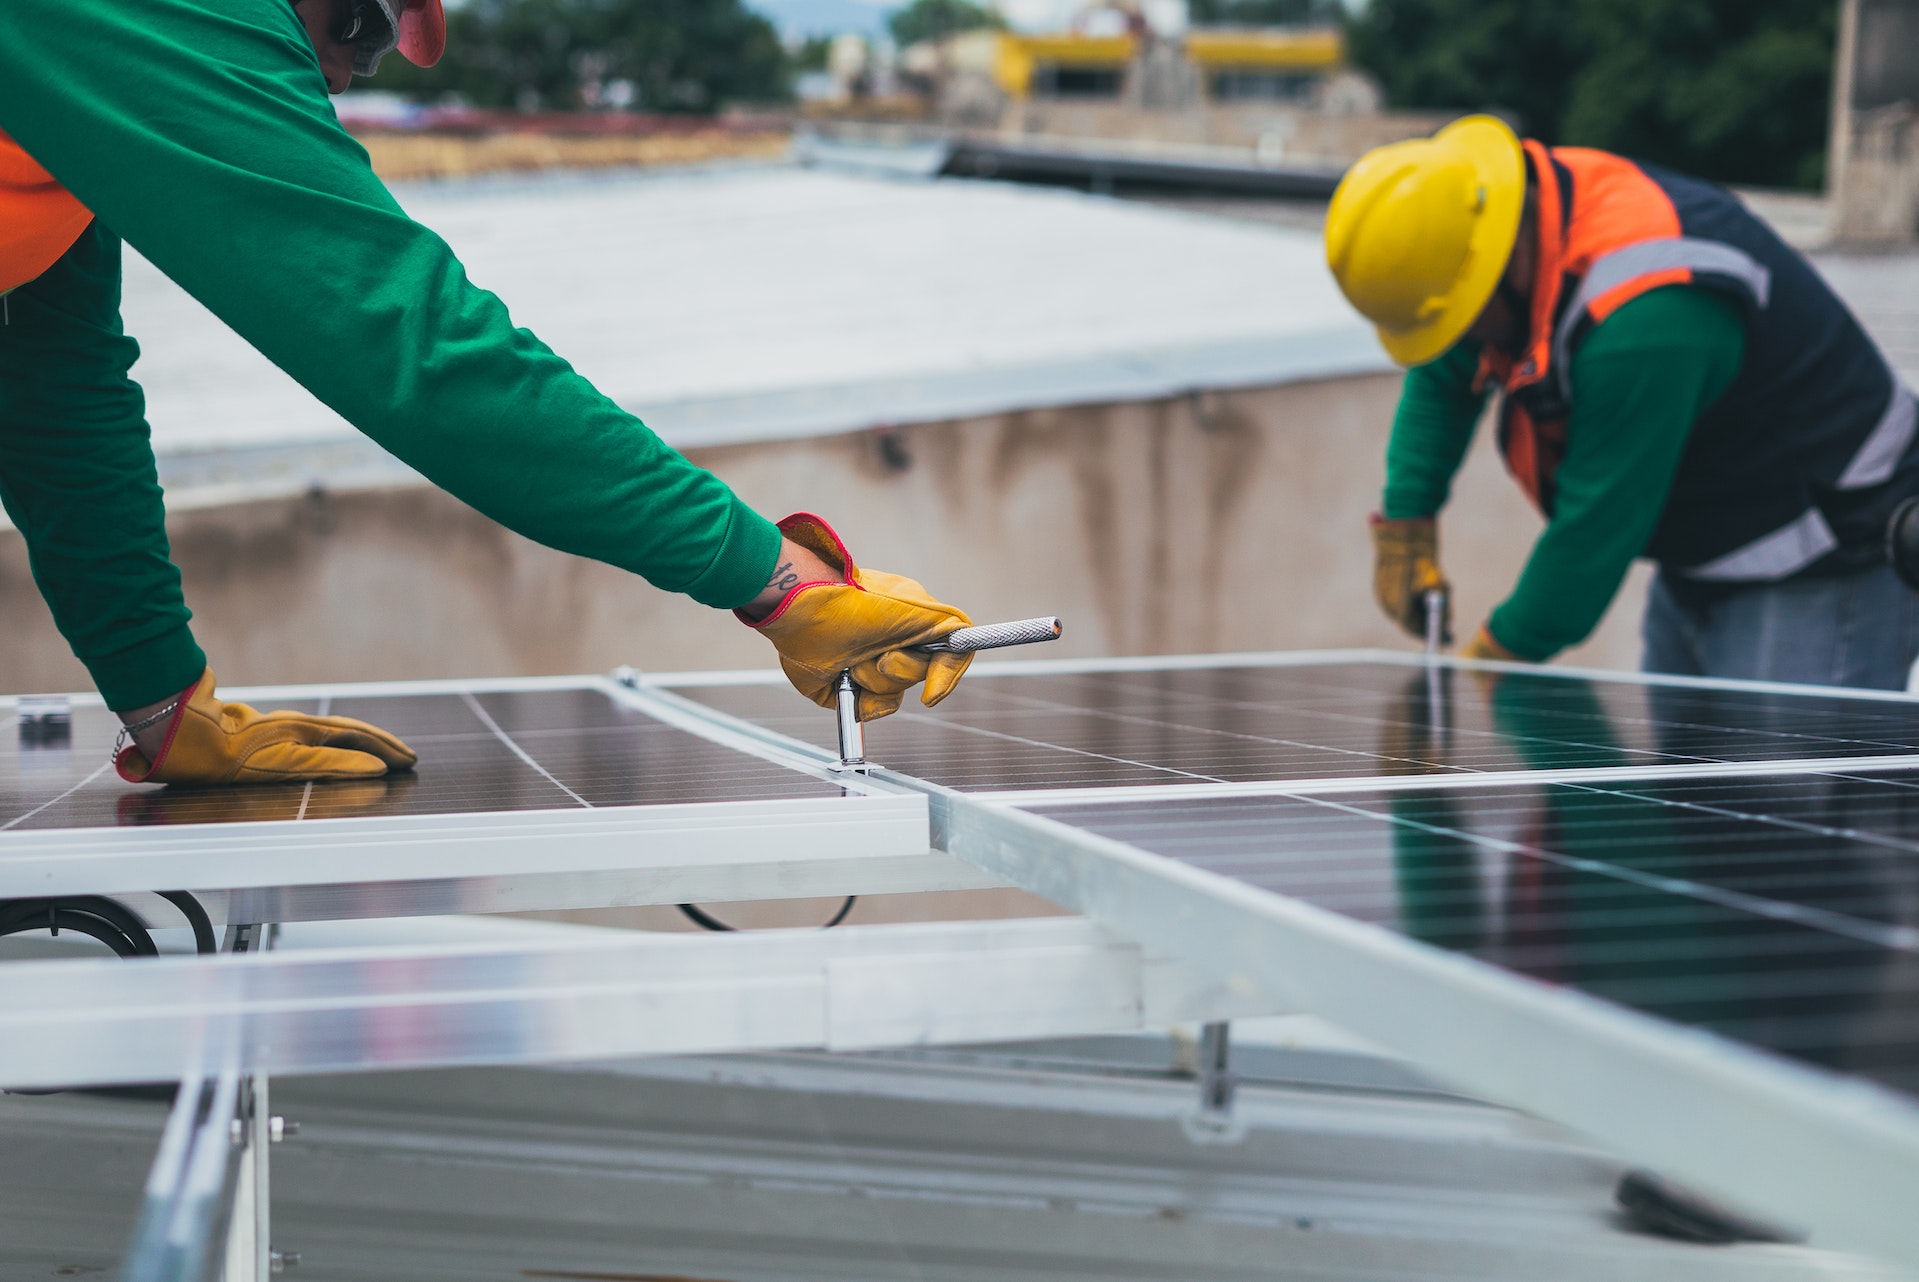 mix energetique pays fabrication joue role-cle reduire impact carbone panneaux photovoltaique - Le Monde de l'Energie